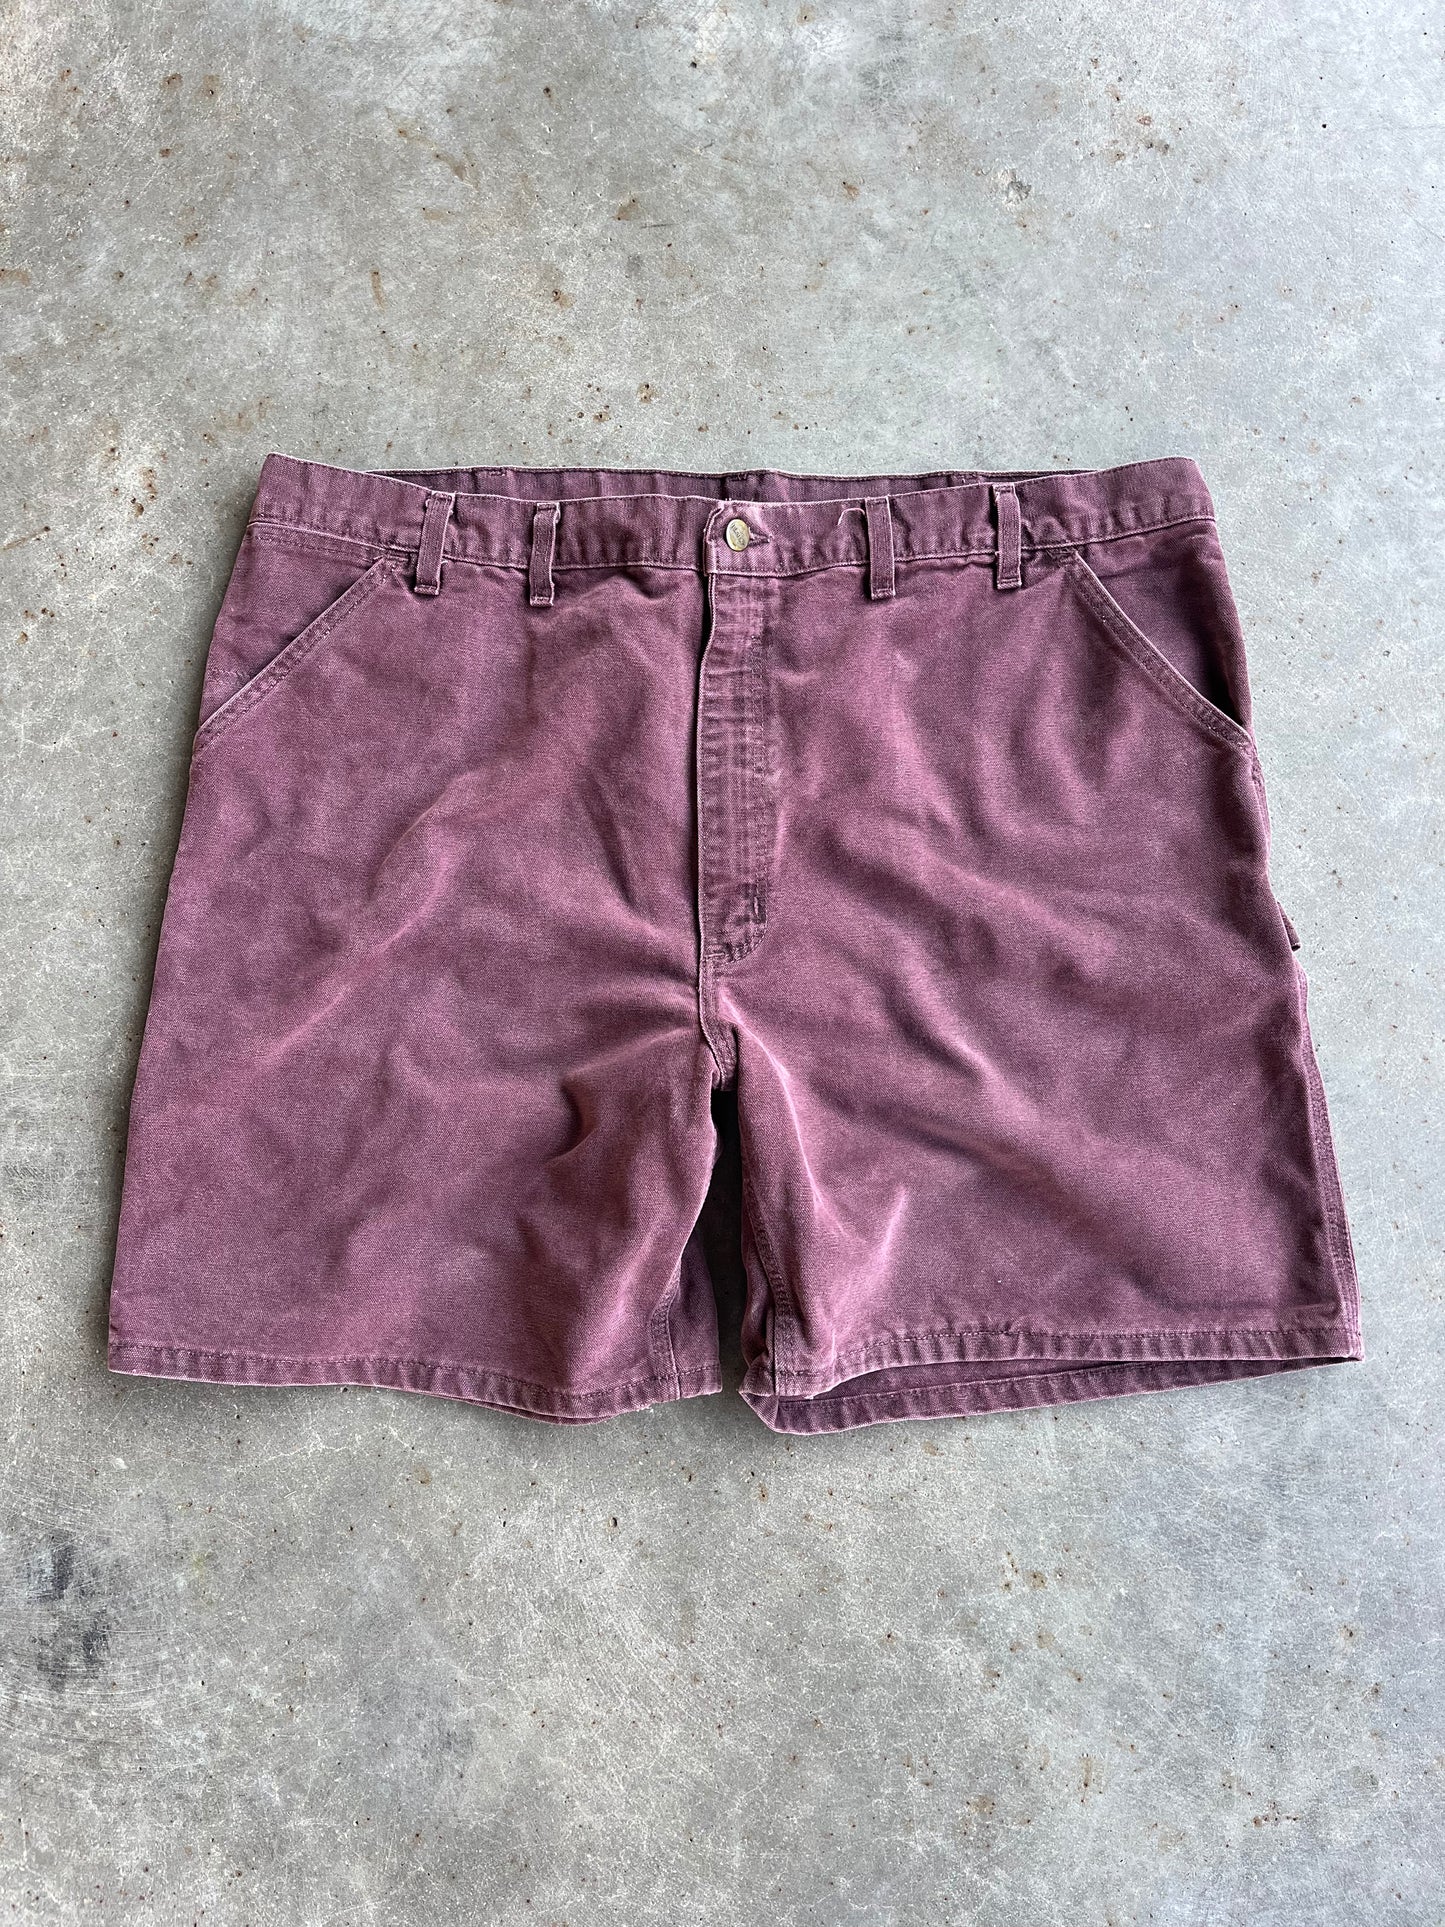 Vintage Maroon Carhartt Shorts - 44X7.5